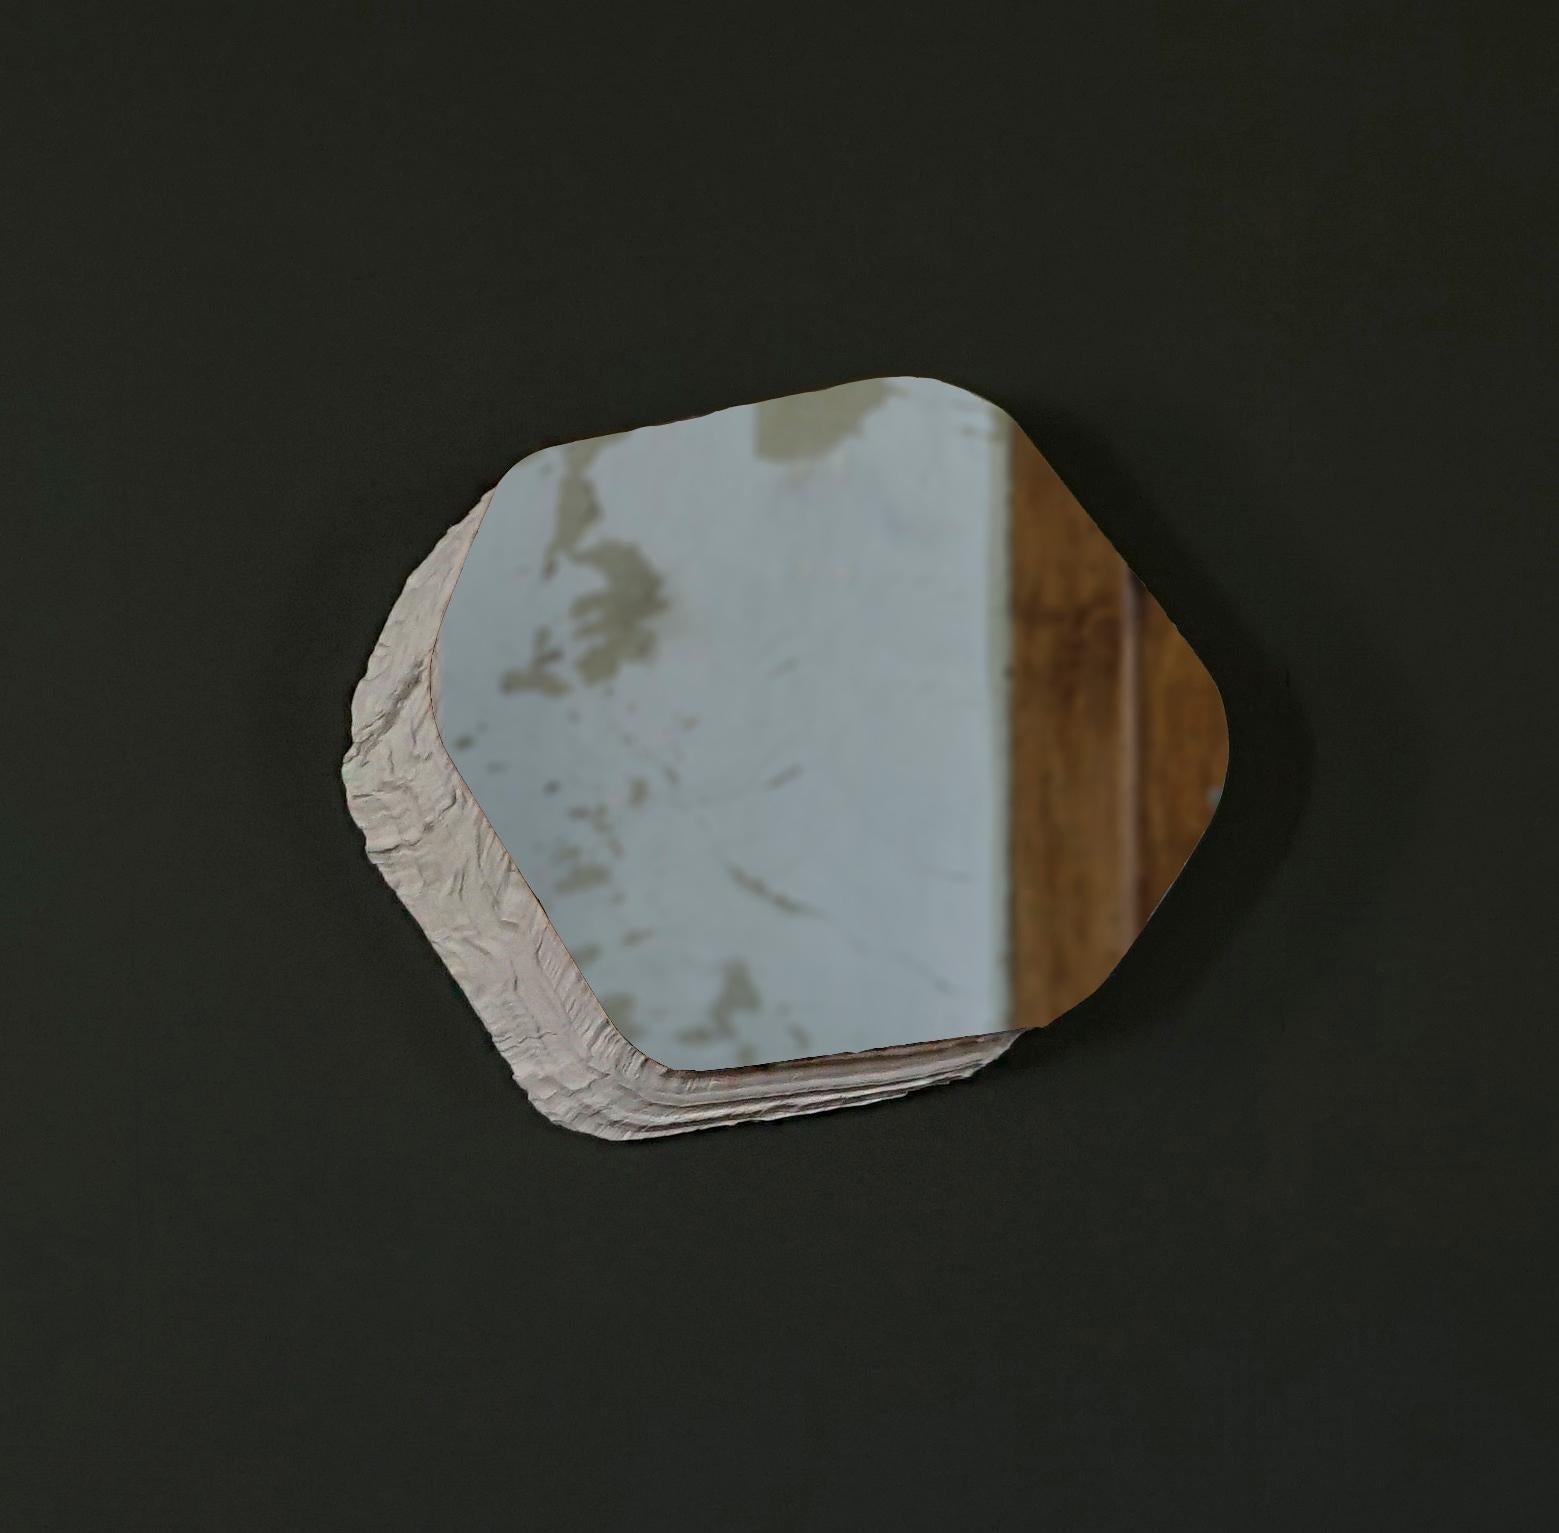 Frei nach dem Vorbild von Sedimentgestein scheint eine gegossene Form aus der Wand herauszuragen, um dann sauber aufgeschnitten zu werden und eine spiegelnde Oberfläche zum Vorschein zu bringen. Vollkommen skulptural und voll funktionsfähig.

Über